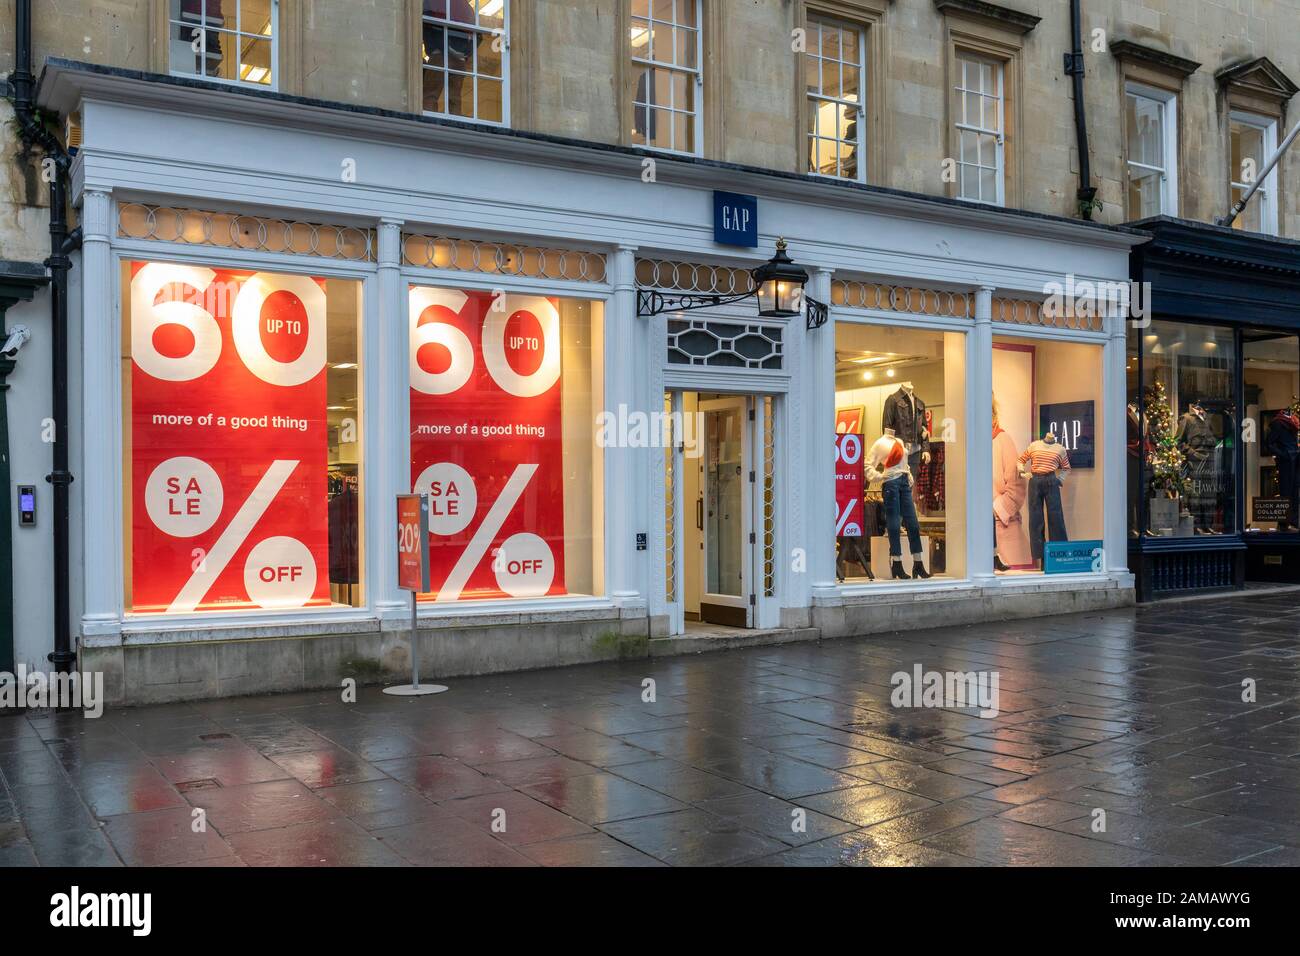 Jusqu'à 60 % de réduction sur les soldes de janvier dans le magasin Gap de Bath, Angleterre, Royaume-Uni Banque D'Images